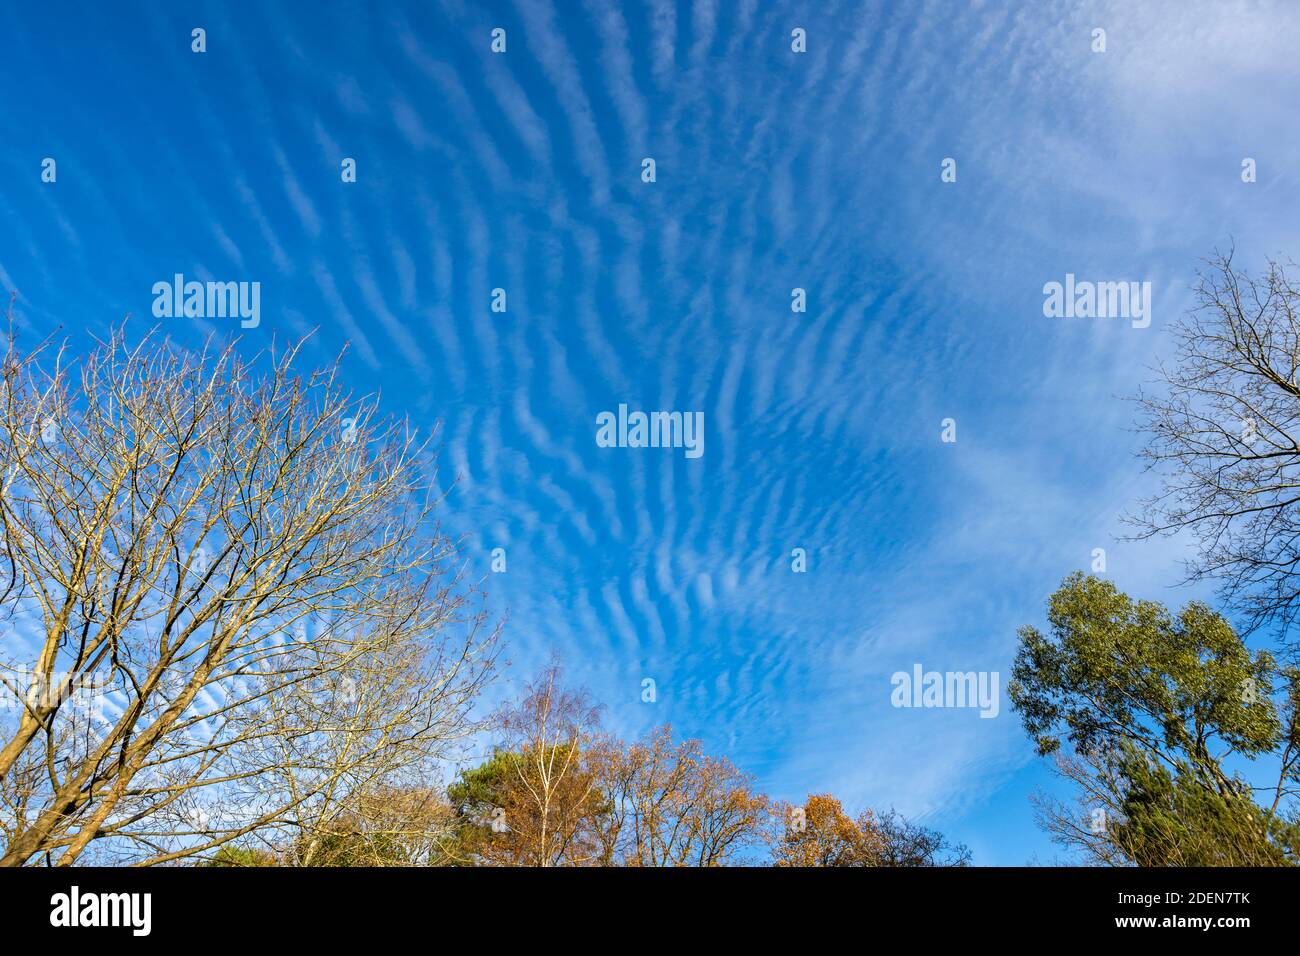 Un ciel bleu de maquereau avec des nuages de Cirrocumulus, blancs typiques, ondulés et ondulés, révélateurs de conditions météorologiques changeantes, au-dessus de Surrey, sud-est en Banque D'Images